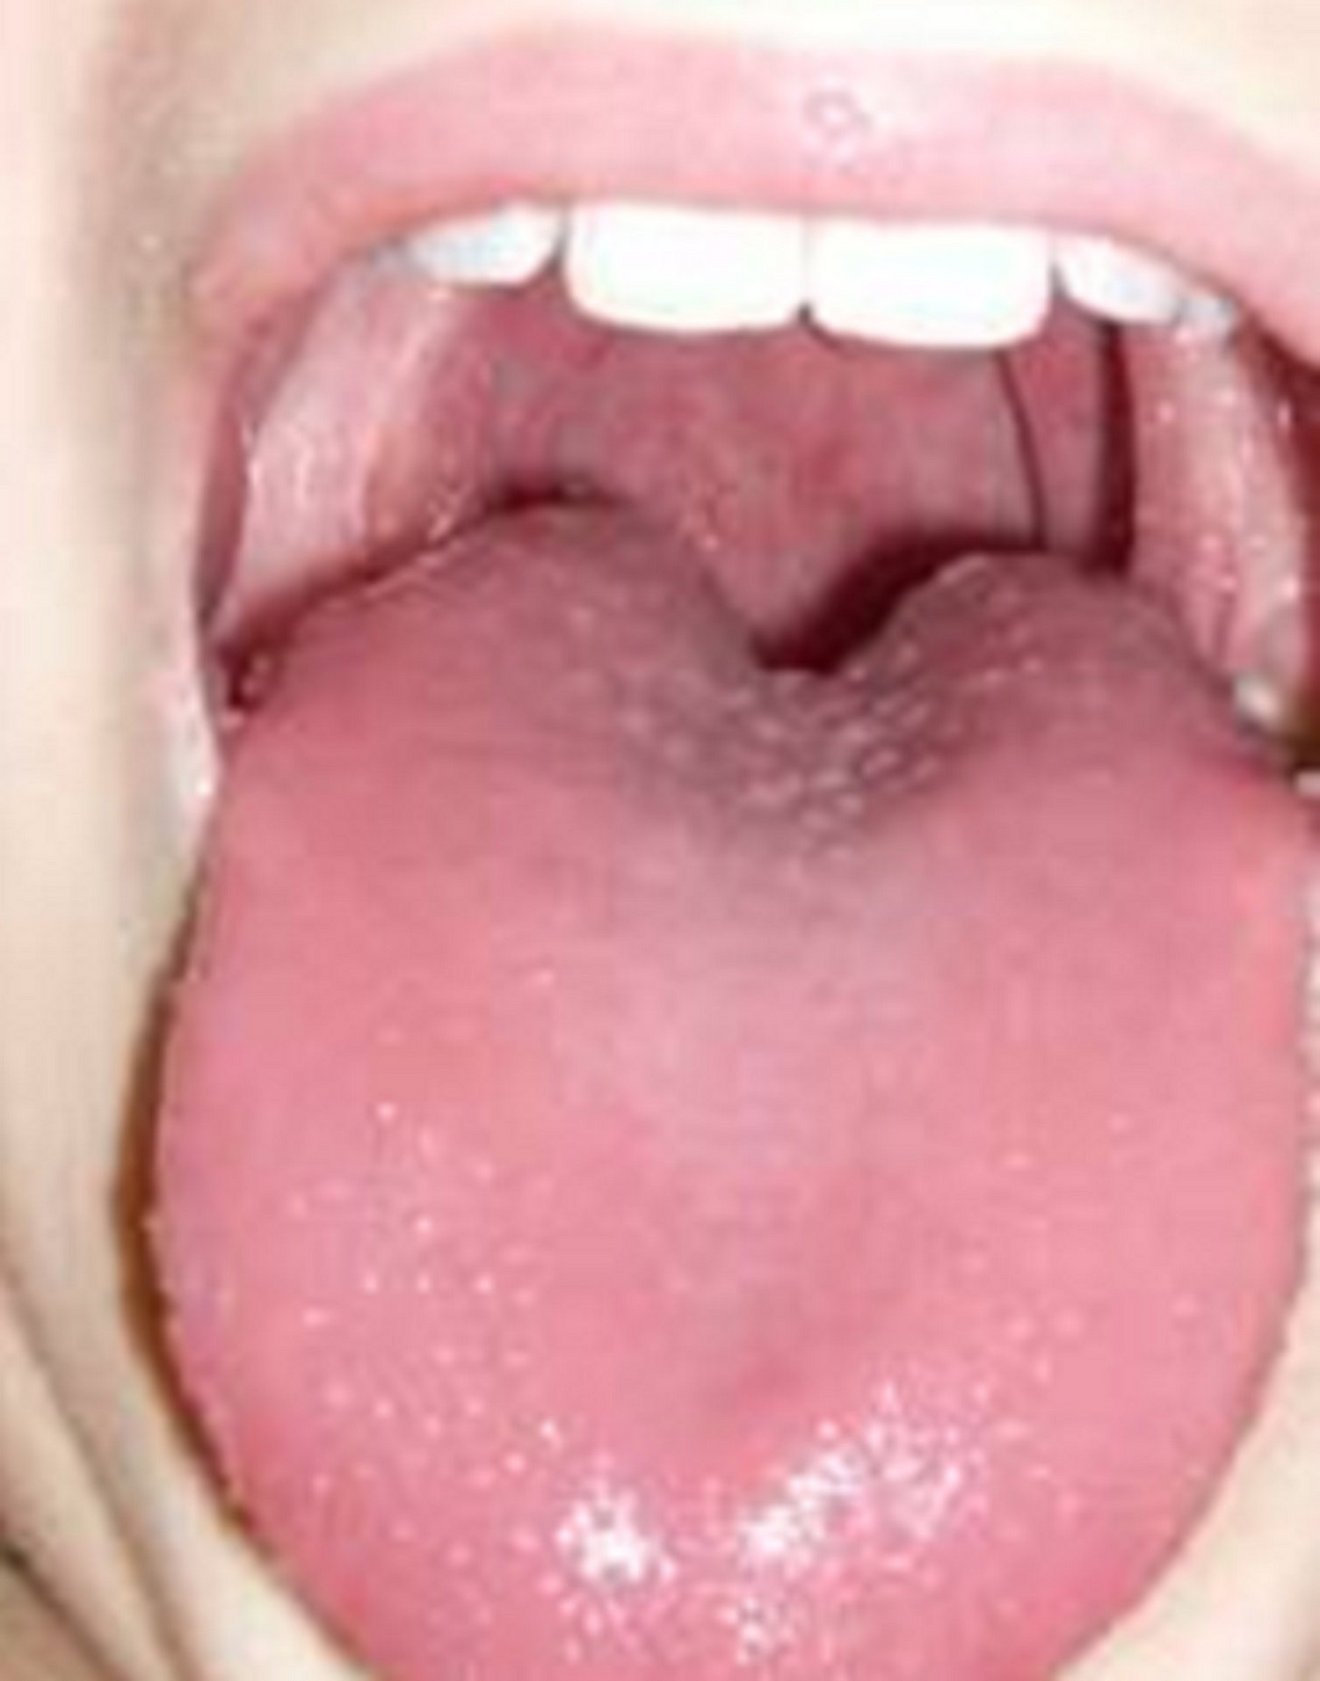 hochrote, rissige und Schwellungen an der Mundhöhle, Erdbeerzunge